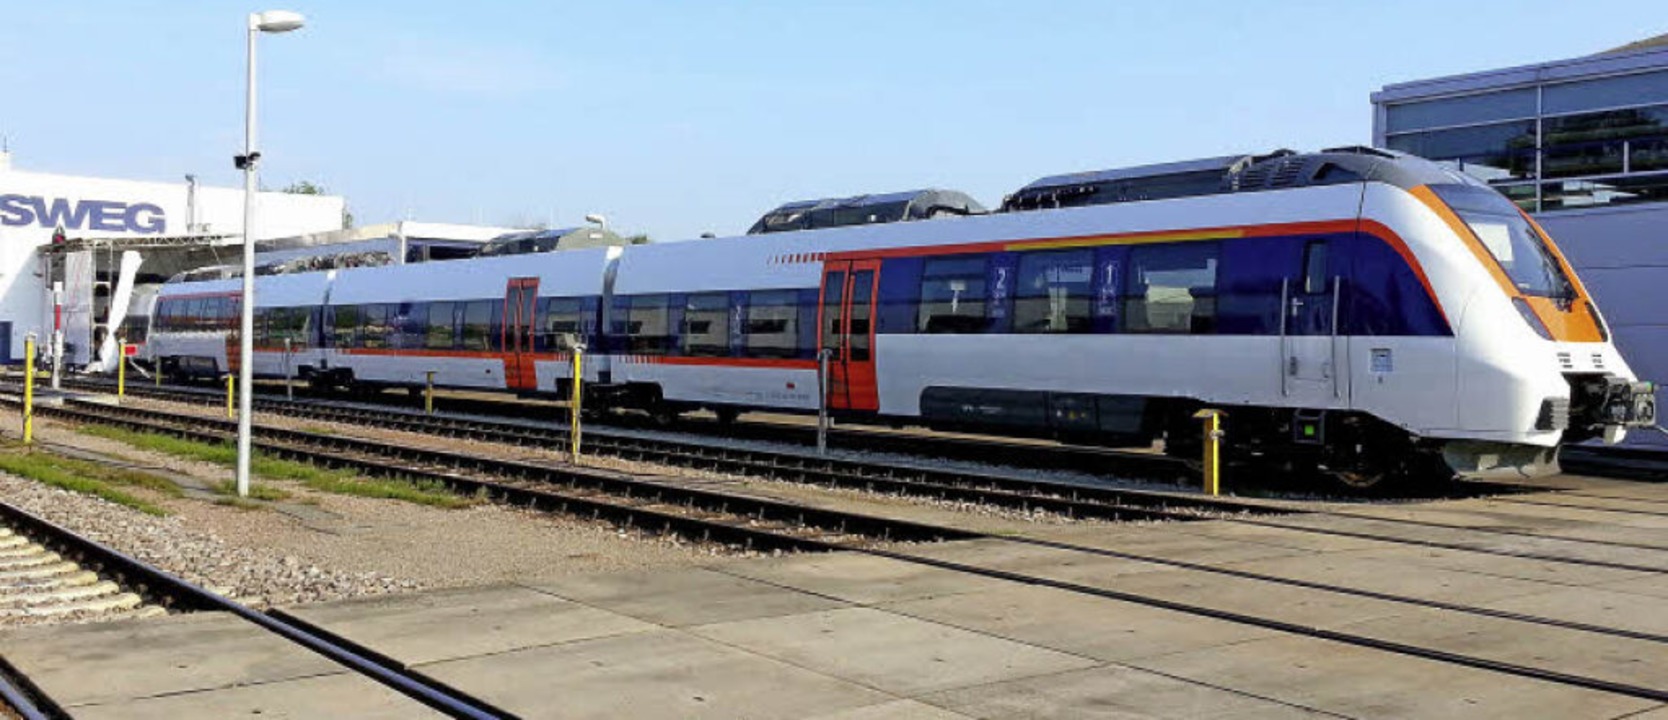 Ein Elektro-Triebzug vom Typ &#8222;Ta... im Juli 2013 am Bahnhof in Endingen.   | Foto: Martin Wendel